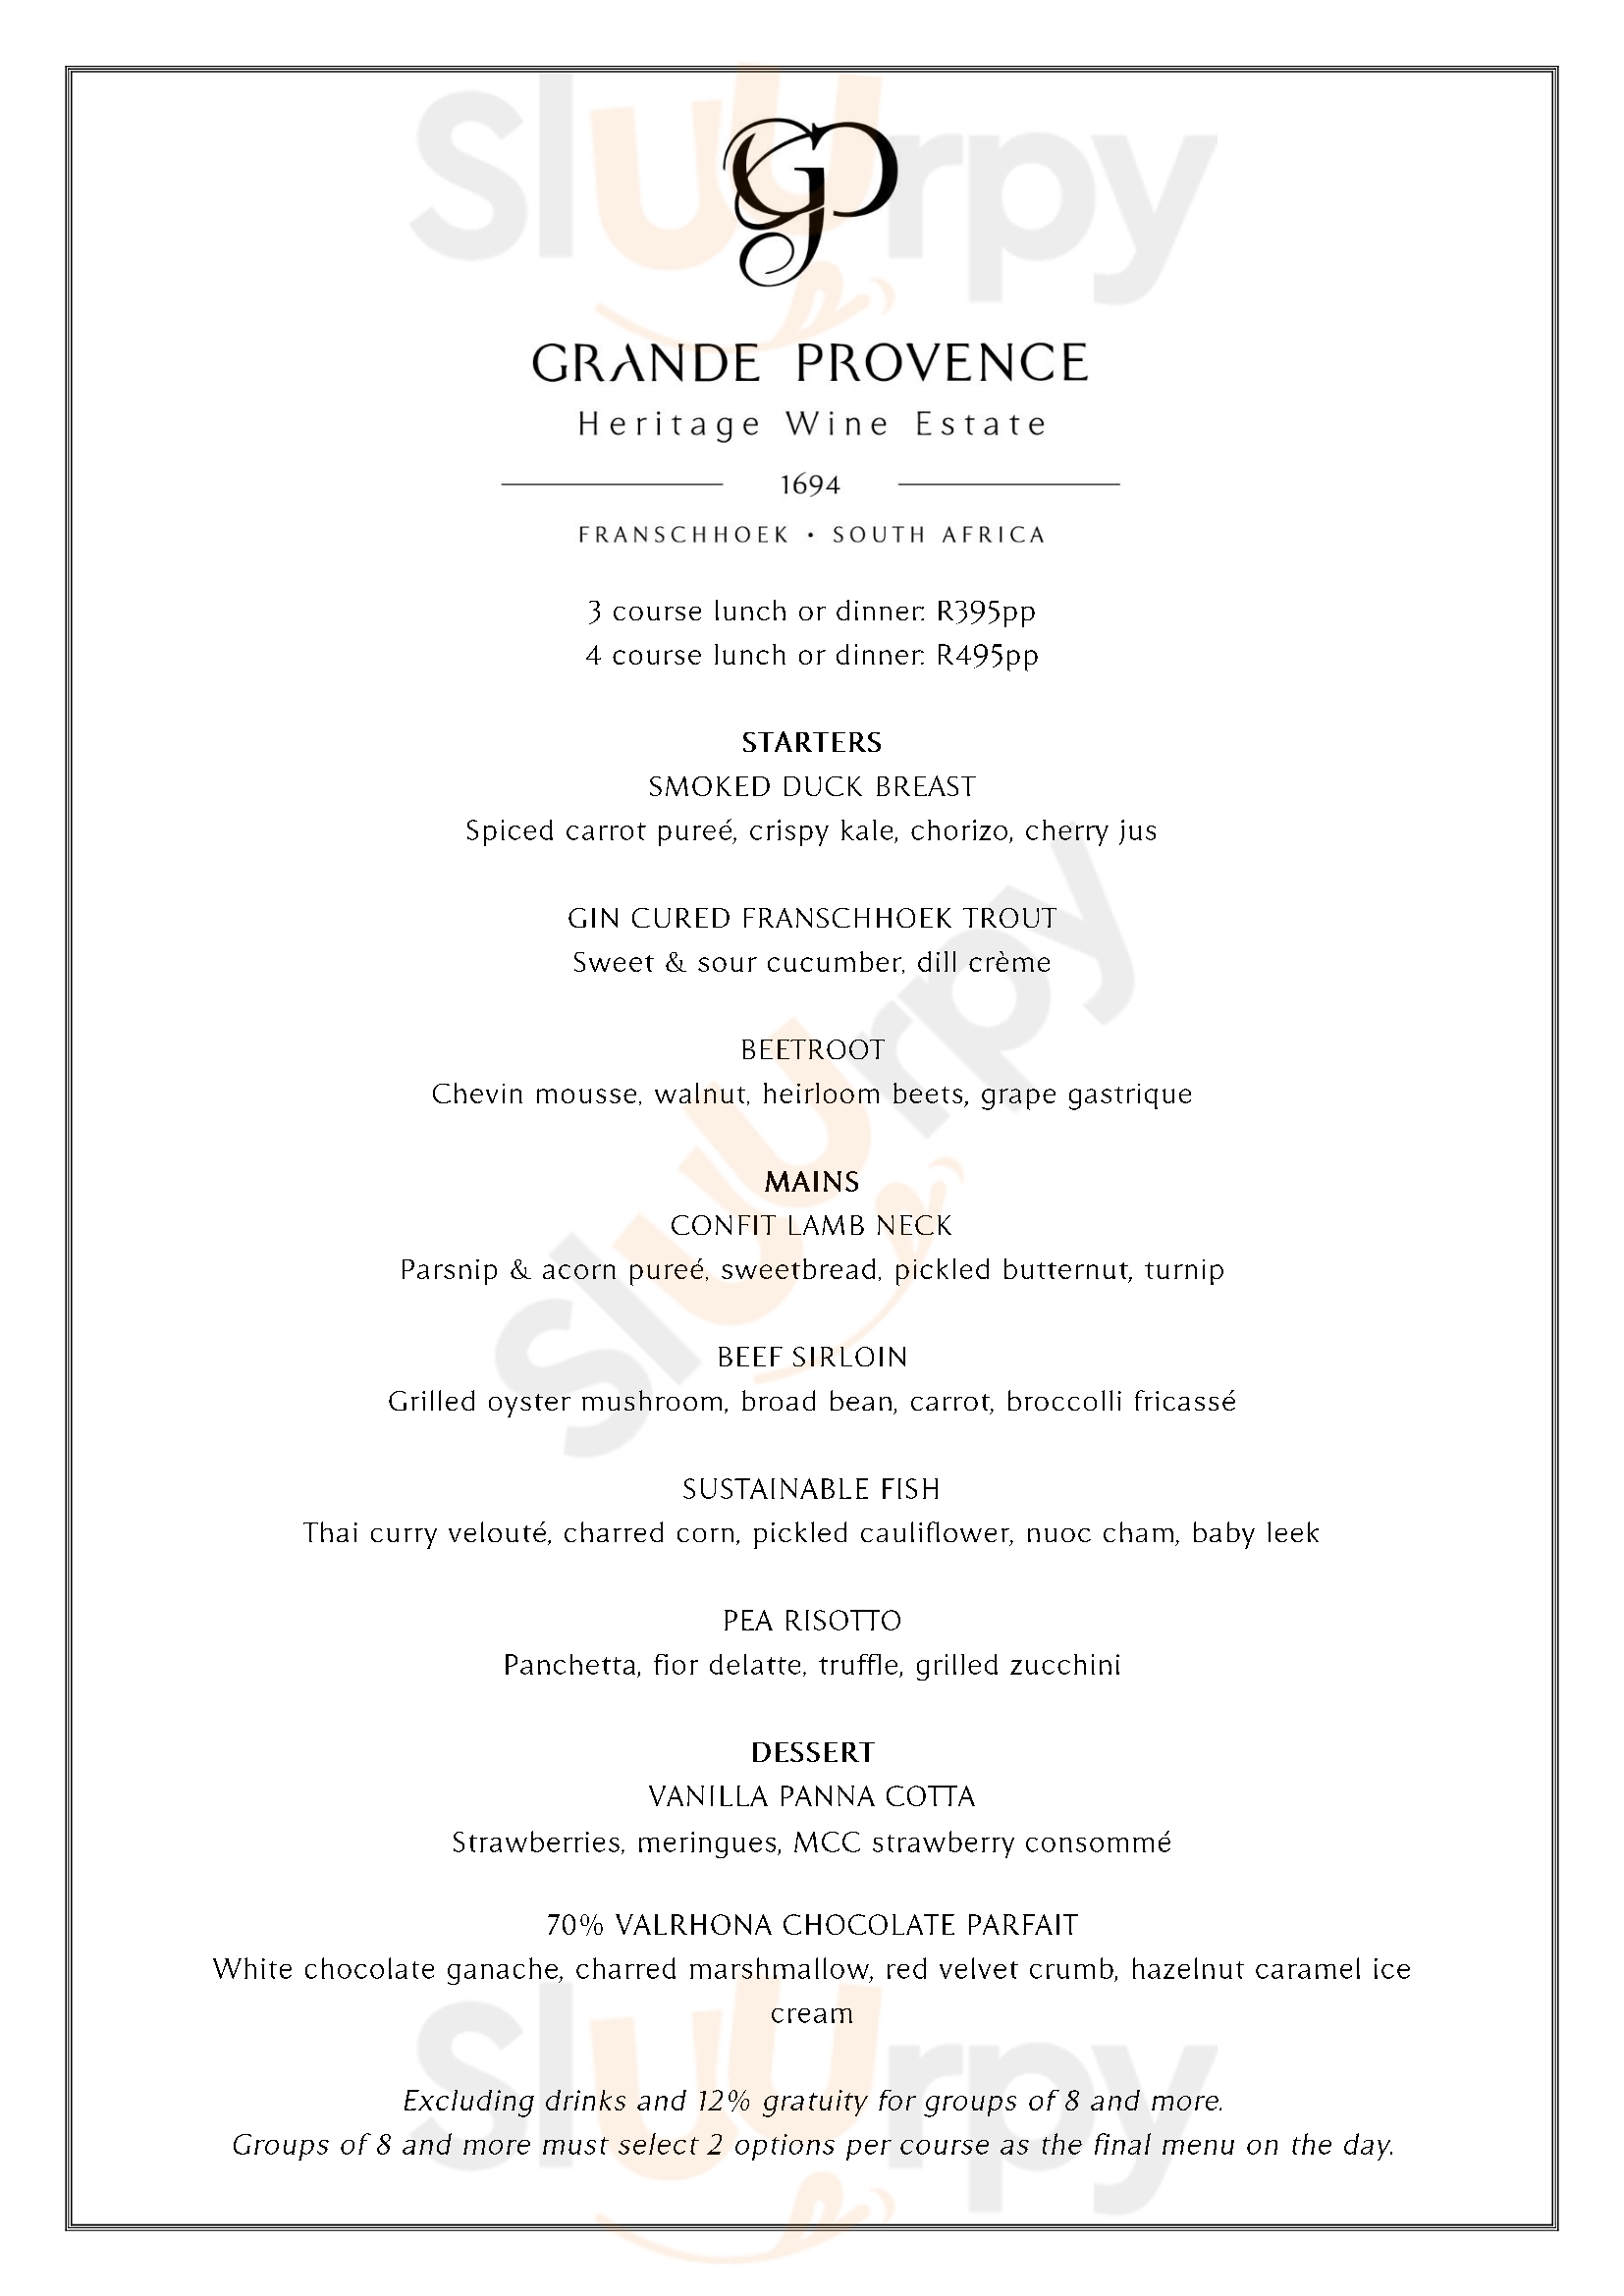 Grande Provence Estate Restaurant Franschhoek Menu - 1